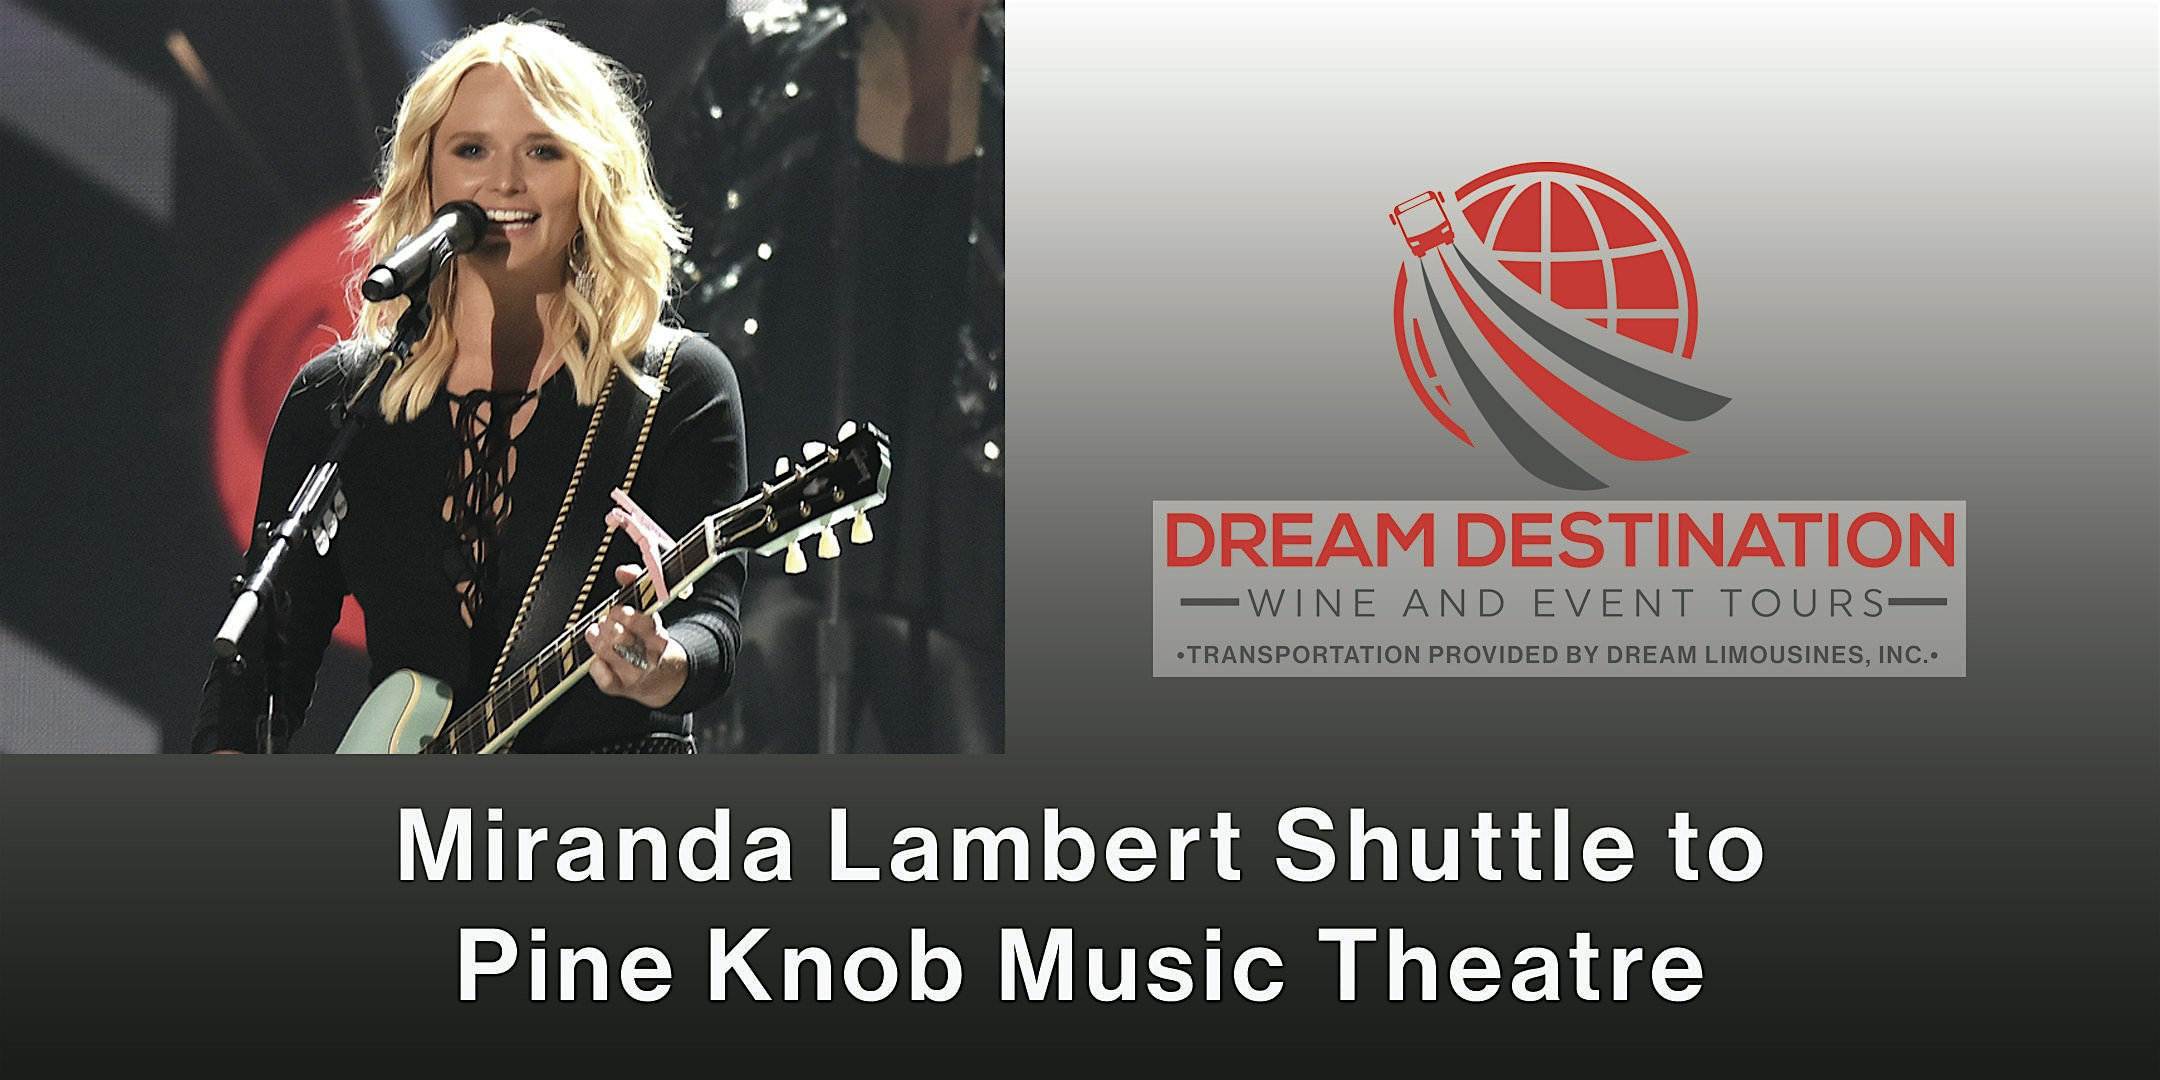 Shuttle Bus to See Miranda Lambert at Pine Knob Music Theatre